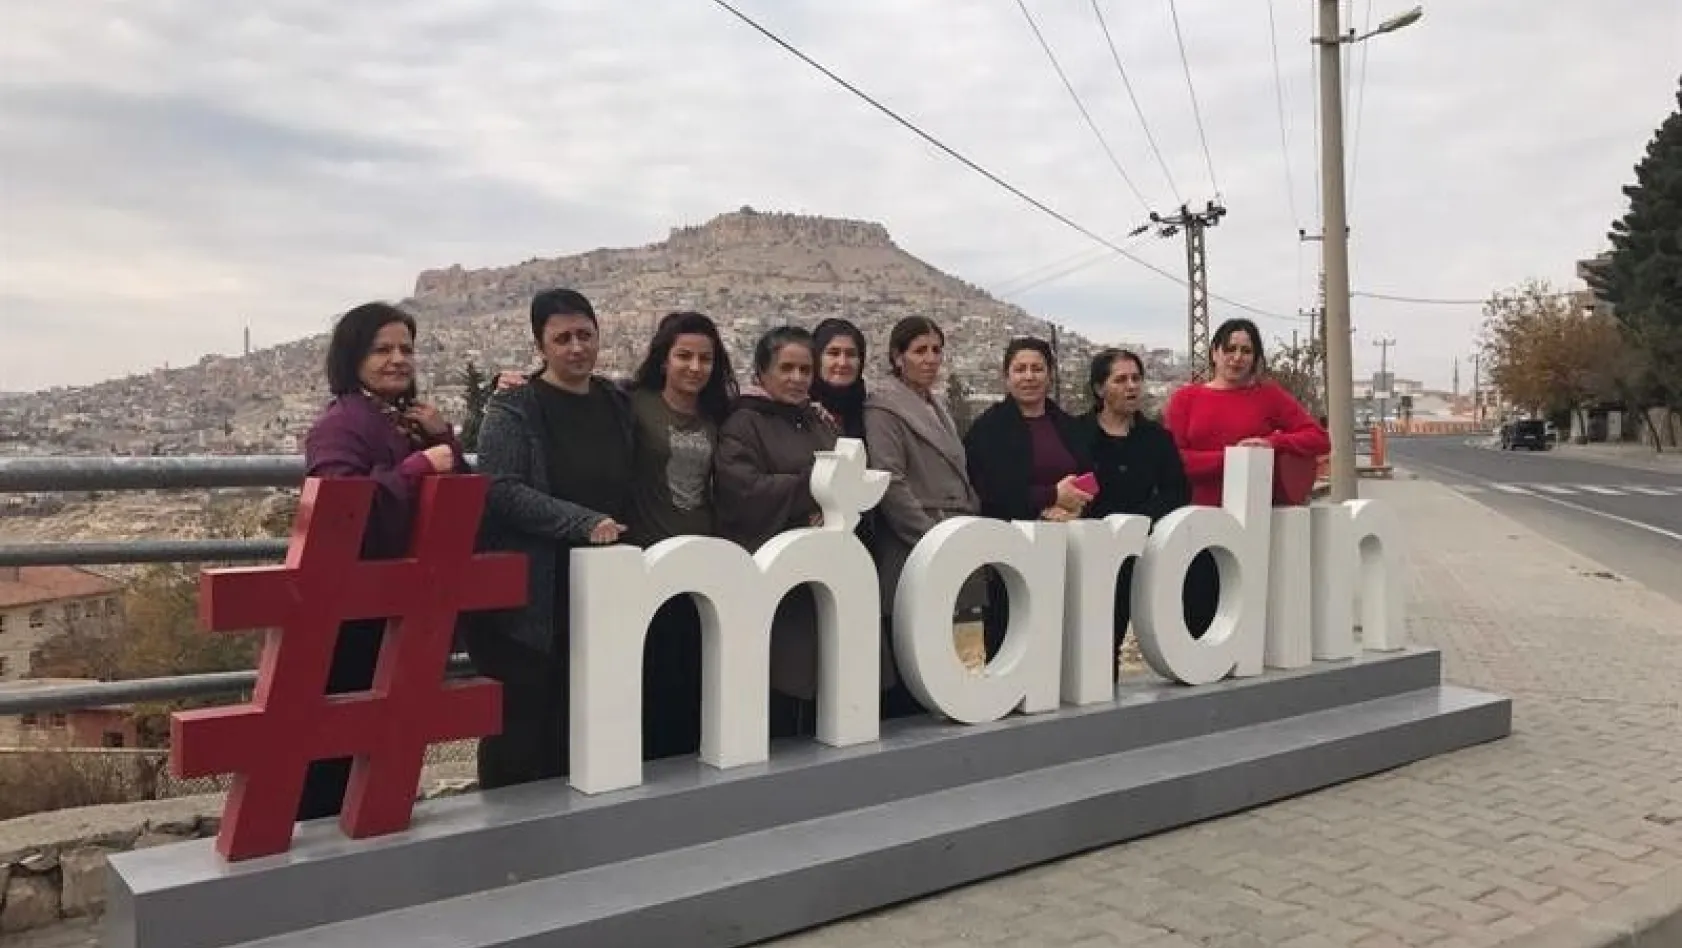 Tuncelili kadınlar, Mardin'i gezdi
